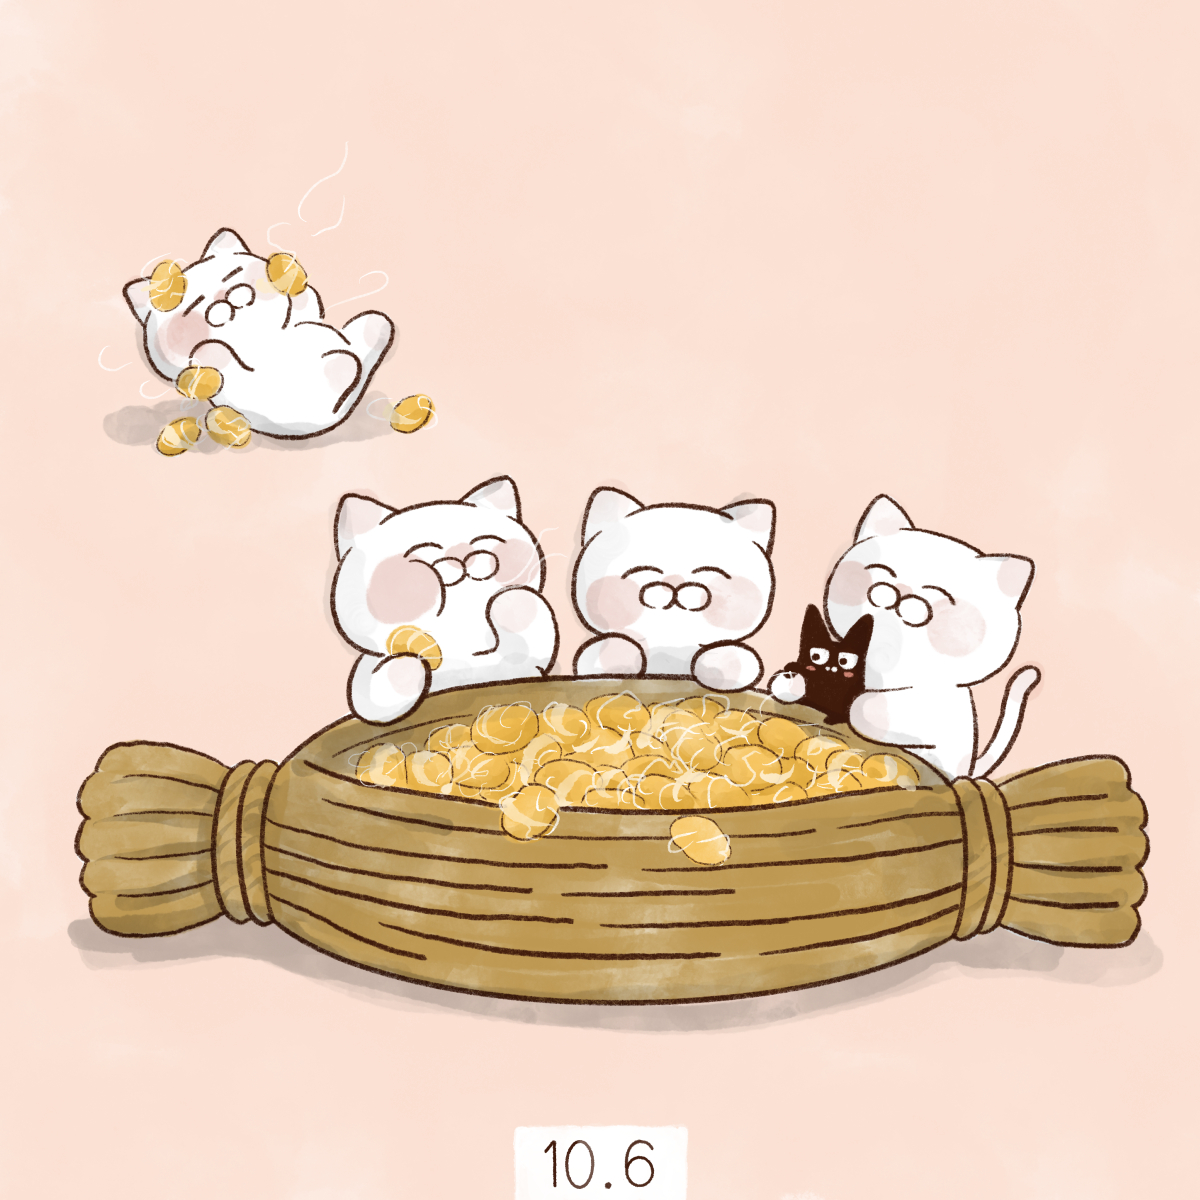 「10月6日【とろ〜りの日】 株式会社ミツカンが販売する納豆製品のPRのために制定」|大和猫のイラスト